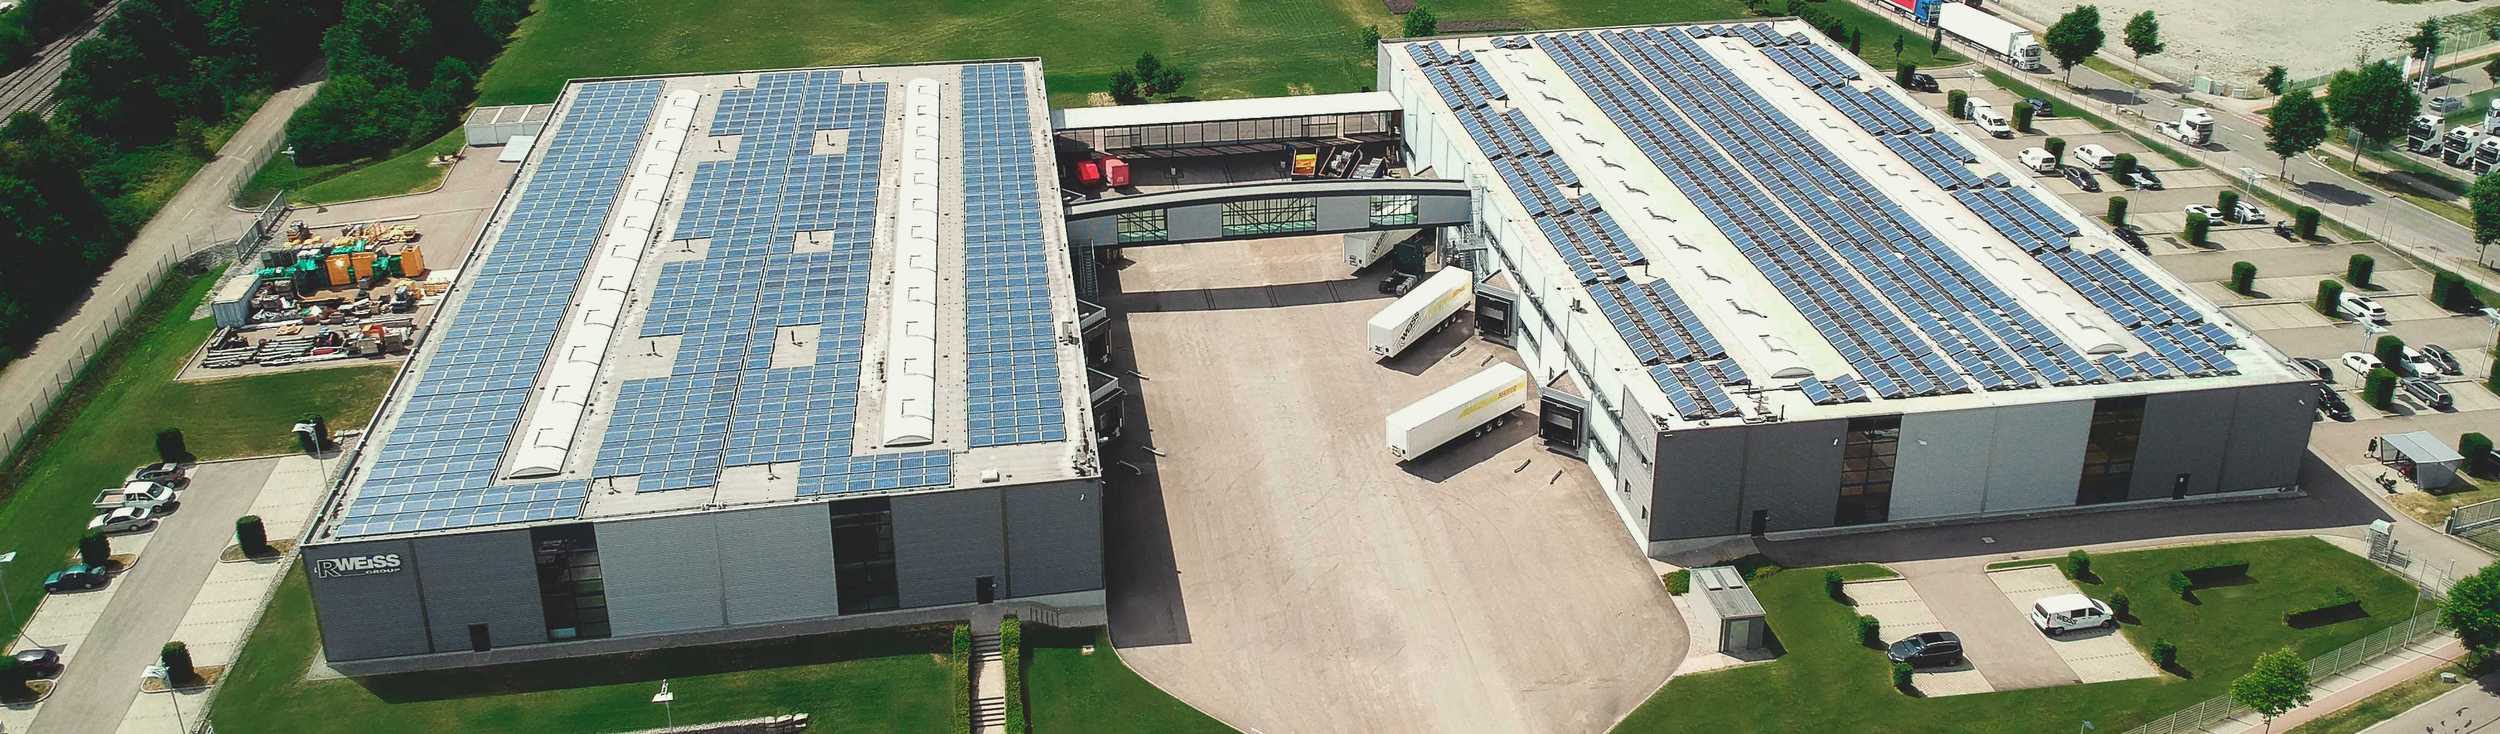 Luftbild des Produktionsstandortes R.WEISS